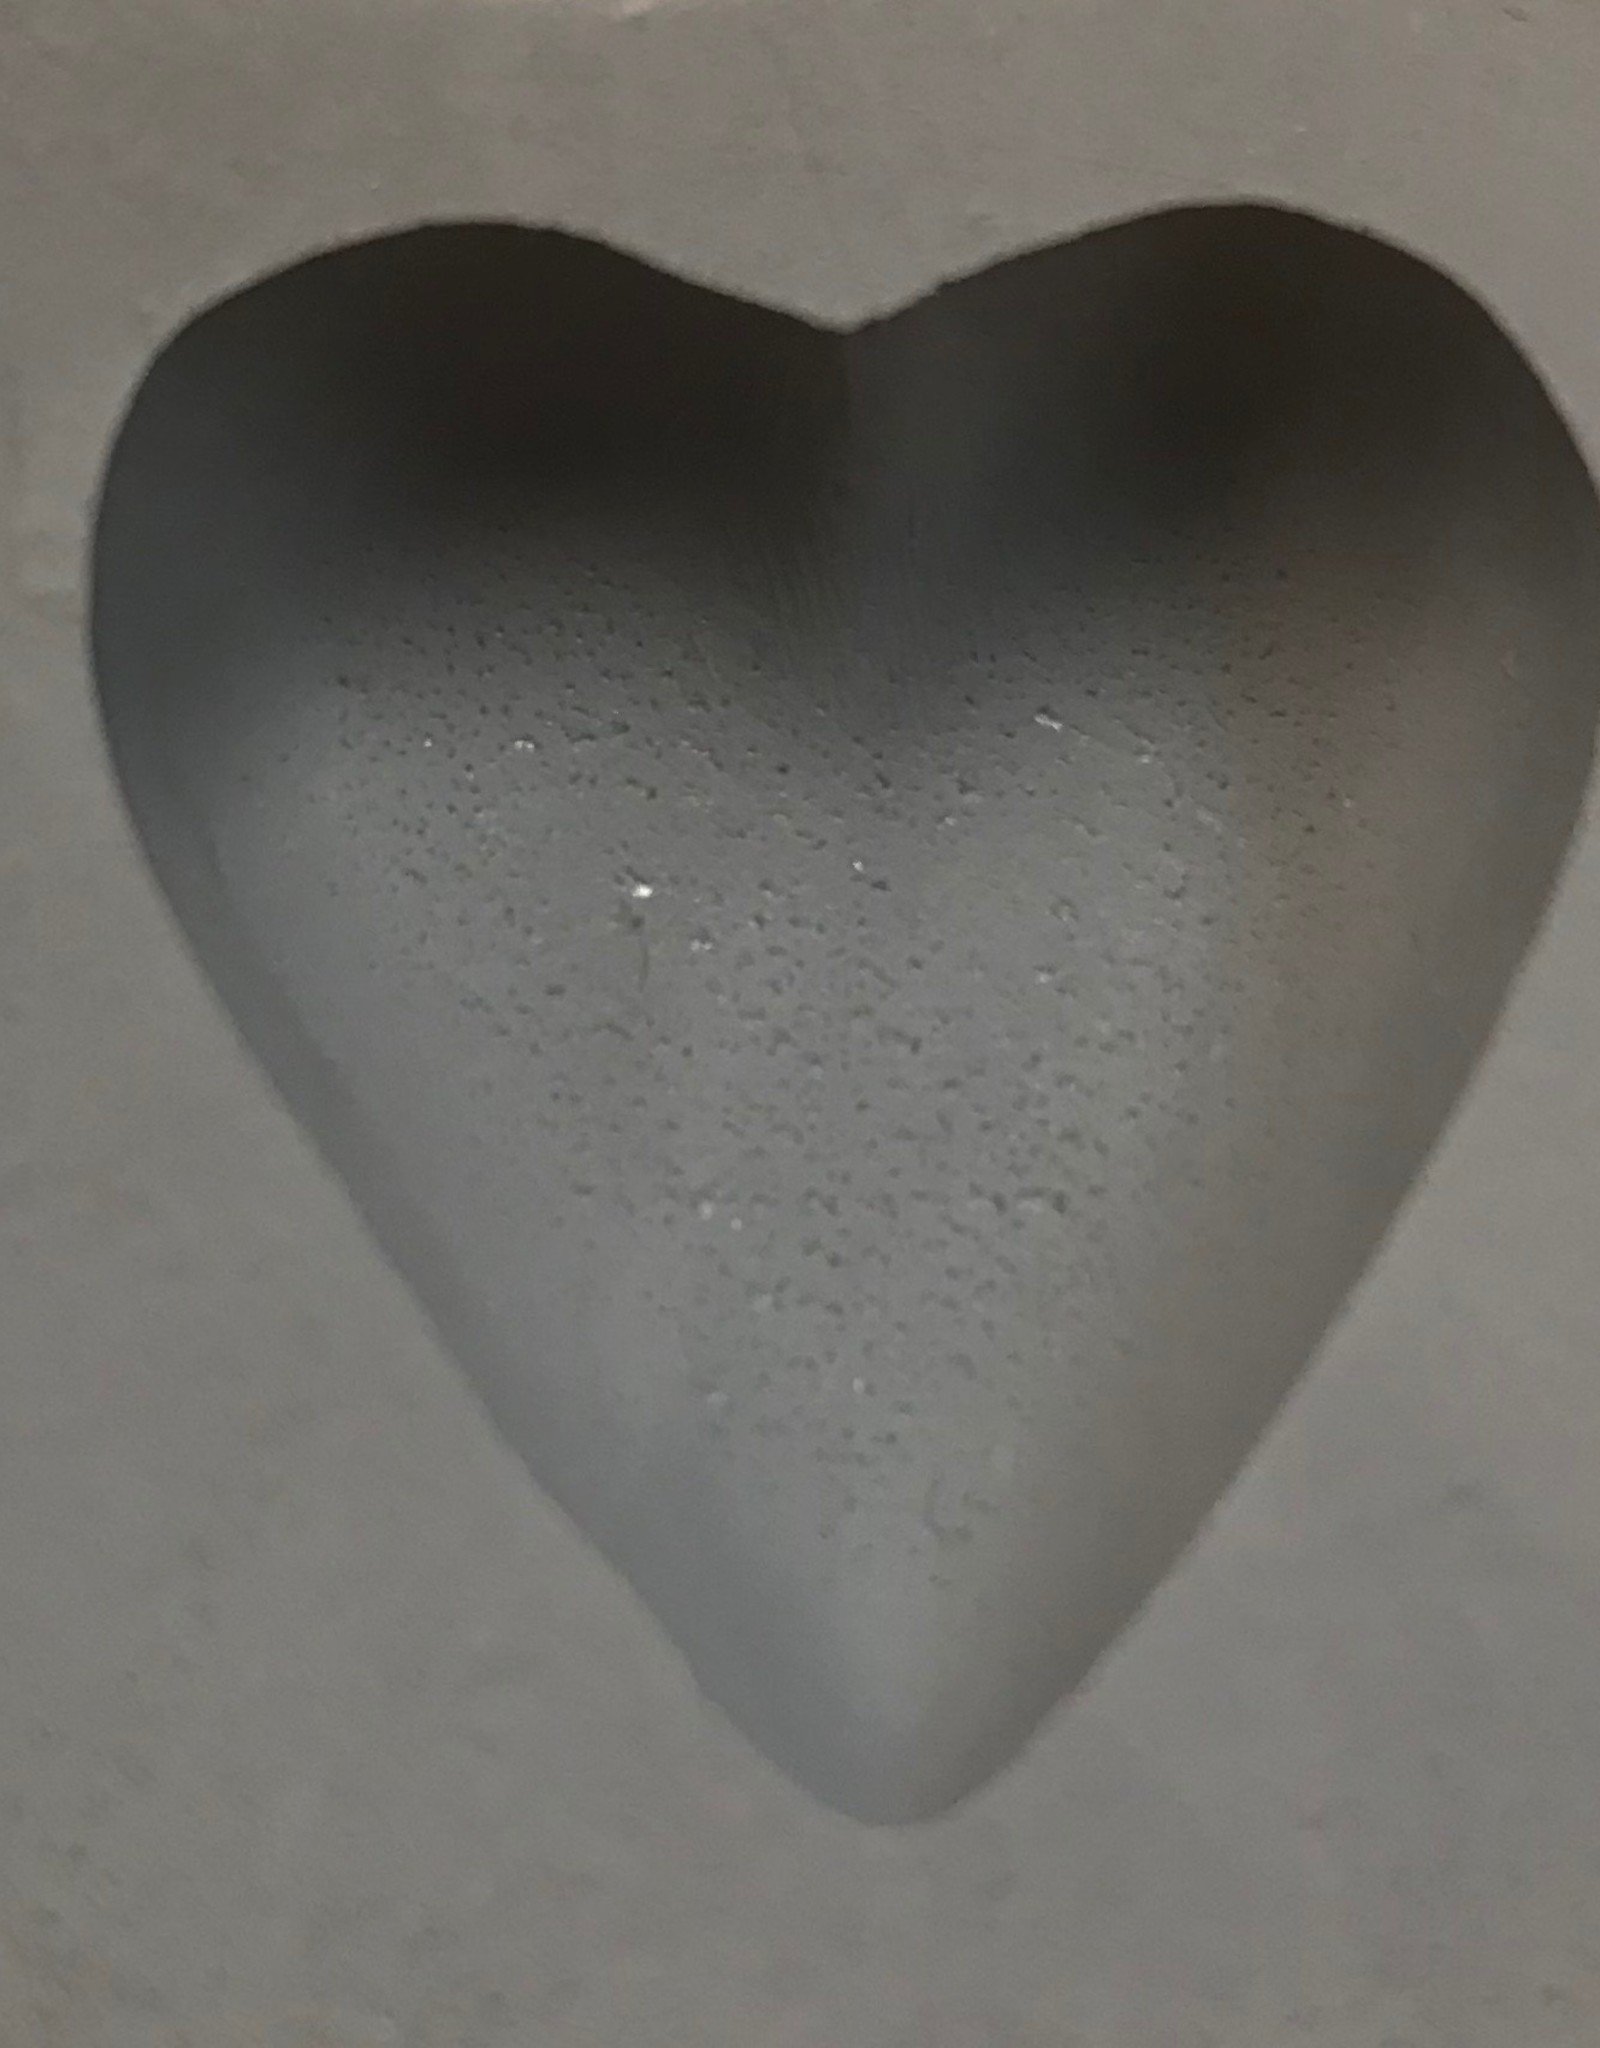 Heart Rubber Mint Mold (1")